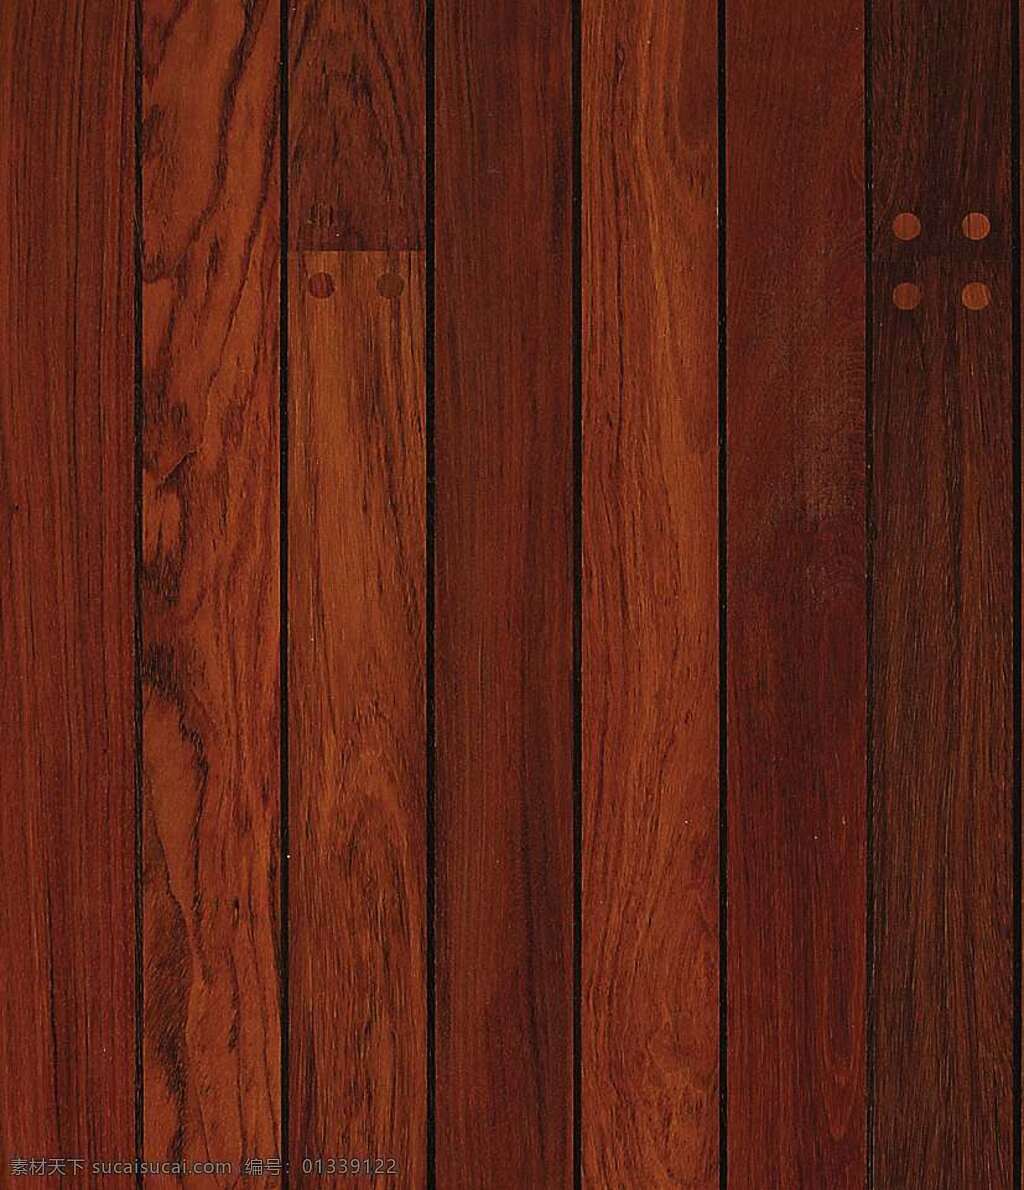 530 木地板 贴图 室内设计 地板贴图 木地板贴图 木地板效果图 木地板材质 装饰素材 室内装饰用图